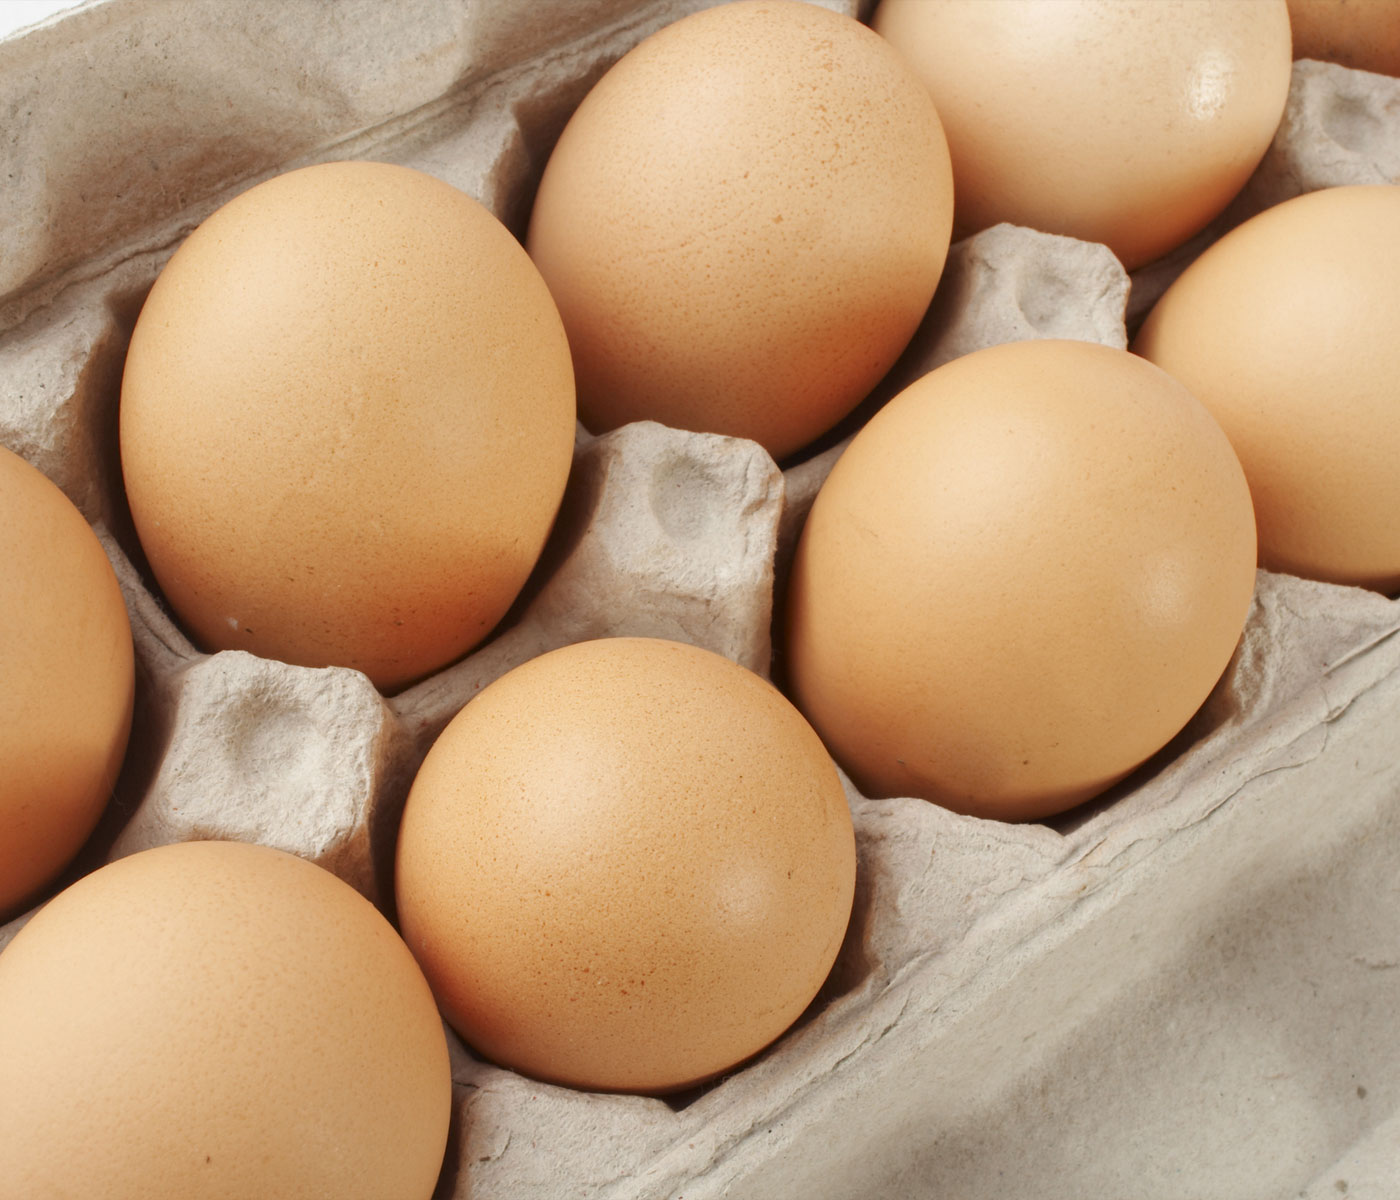 Los productores de huevos españoles han encontrado una oportunidad ante el desabastecimiento de Reino Unido